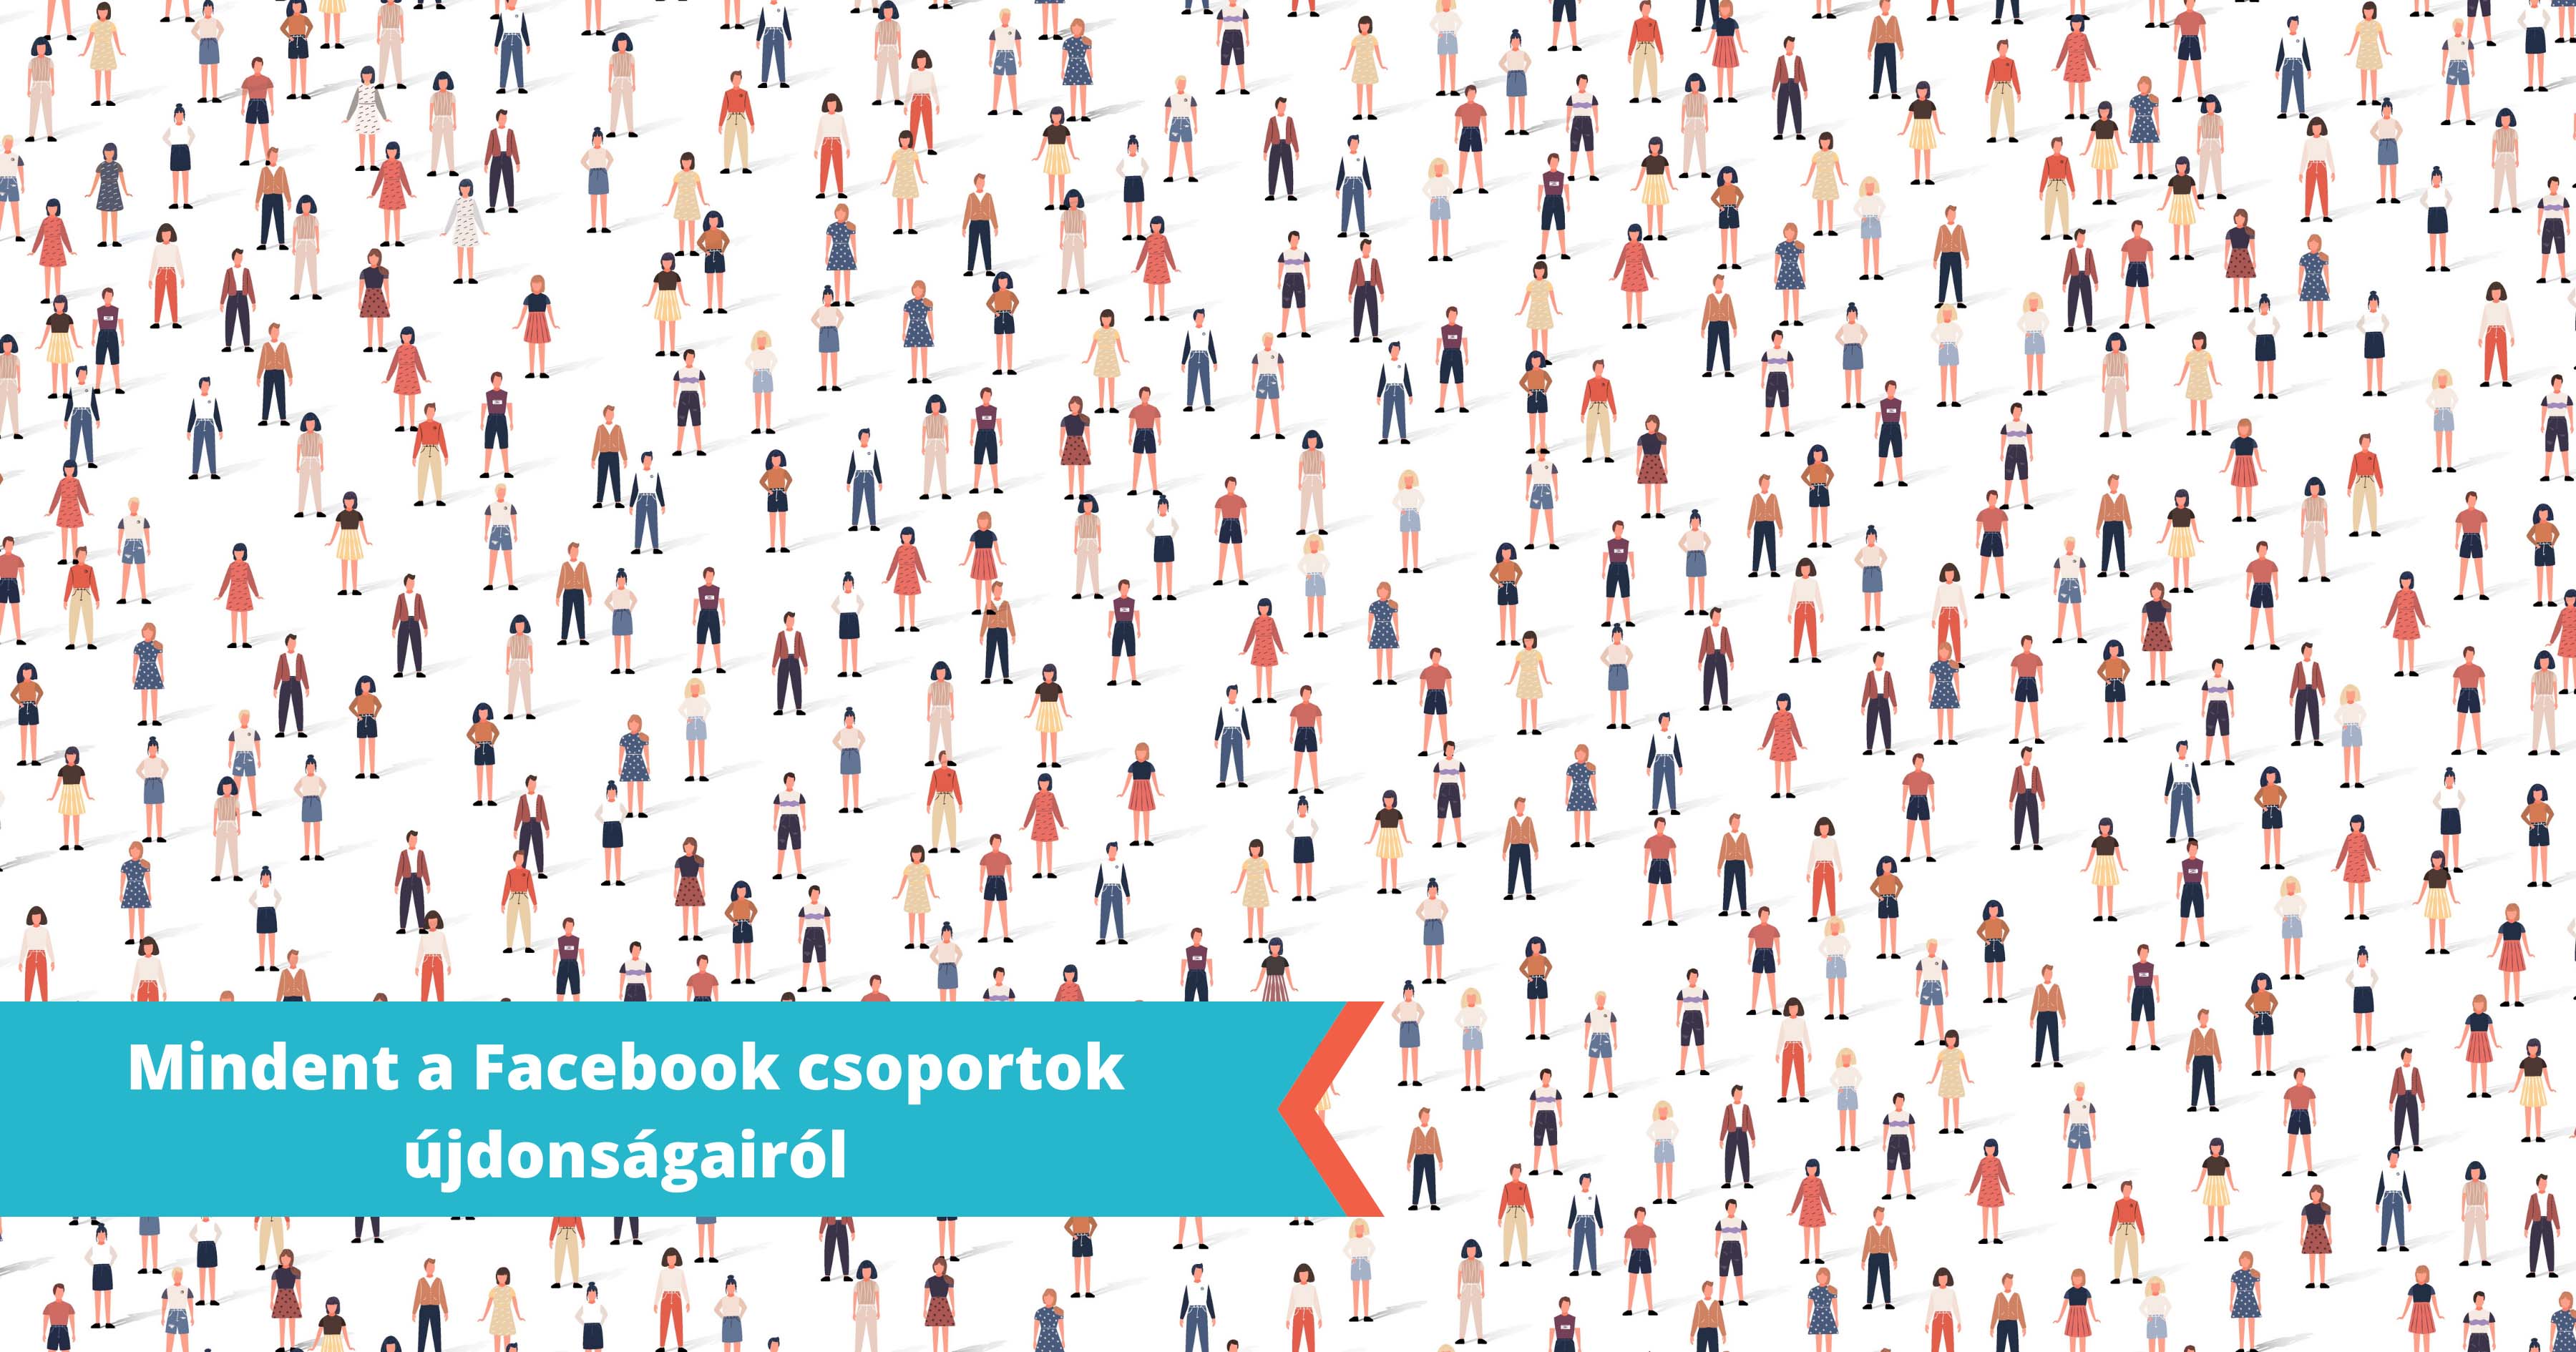 Facebook csoport újdonságok: A Facebook új funkciókat vezet be a csoportoknál, hogy növelje az elköteleződést és javítsa a felhasználói élményt